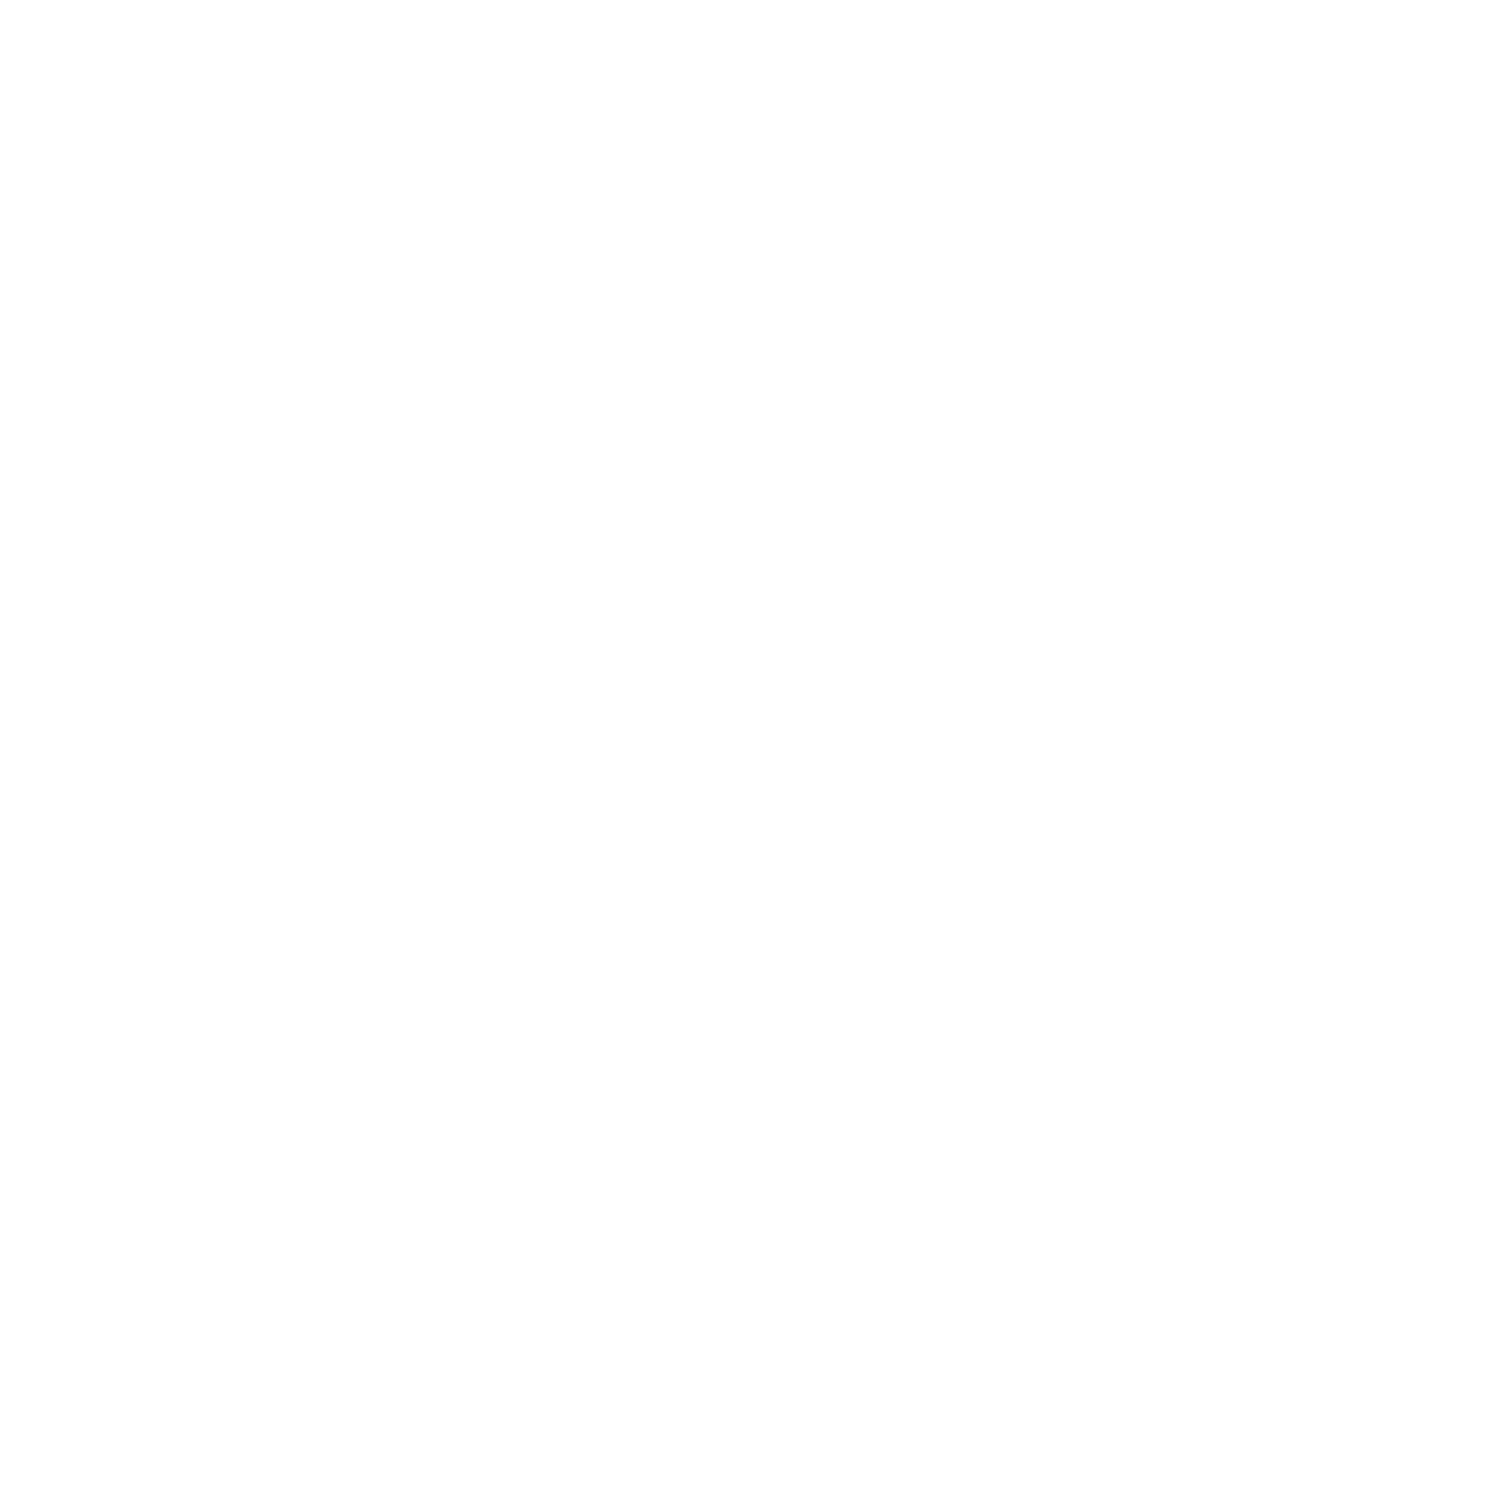 HAUNTED MURFREESBORO